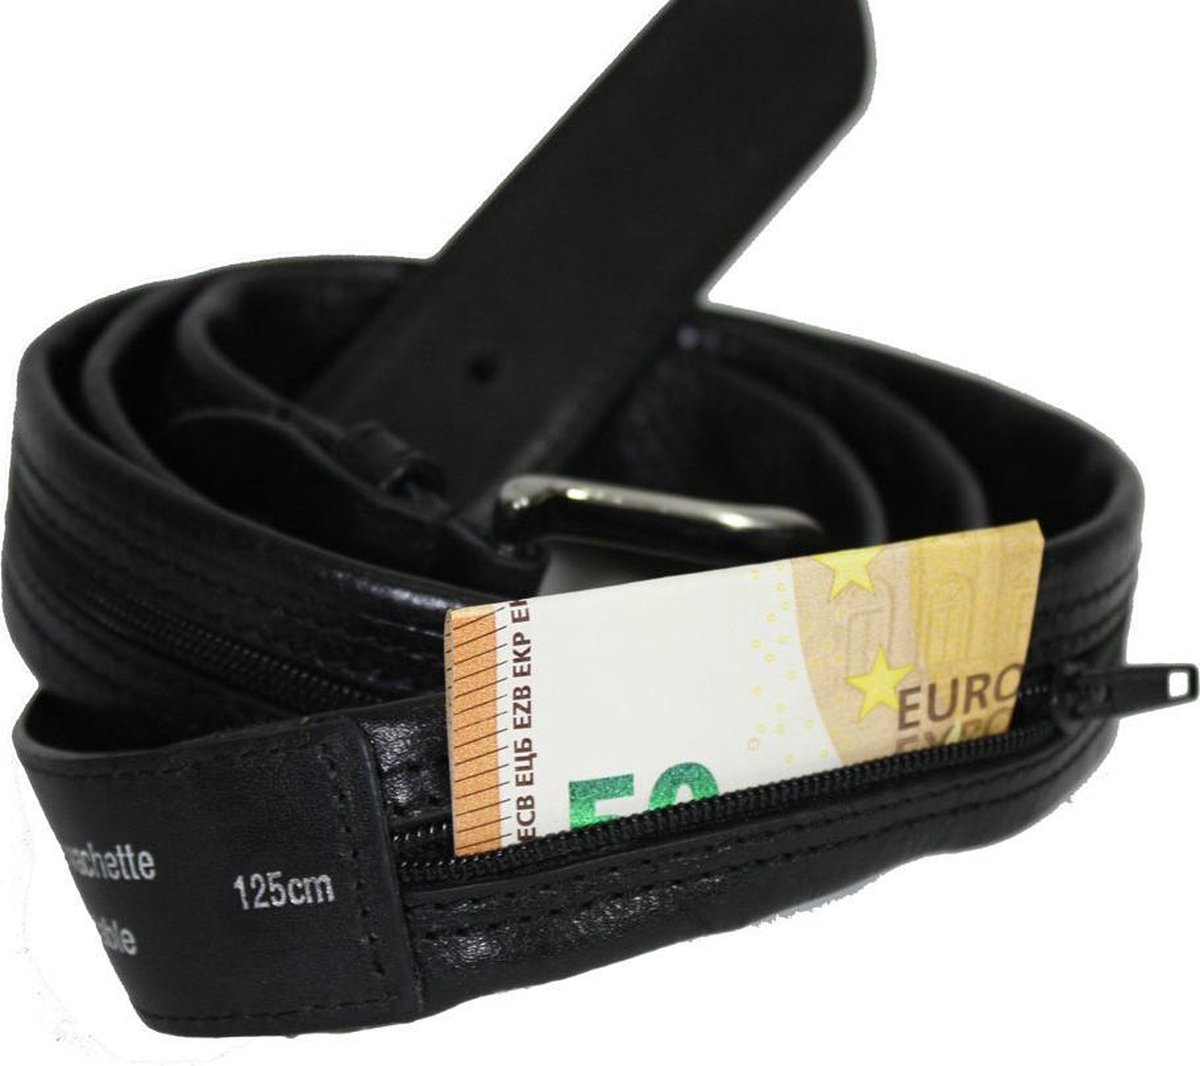 Rangement sécurisé de la ceinture porte-monnaie avec fermeture éclair à l' intérieur | bol.com